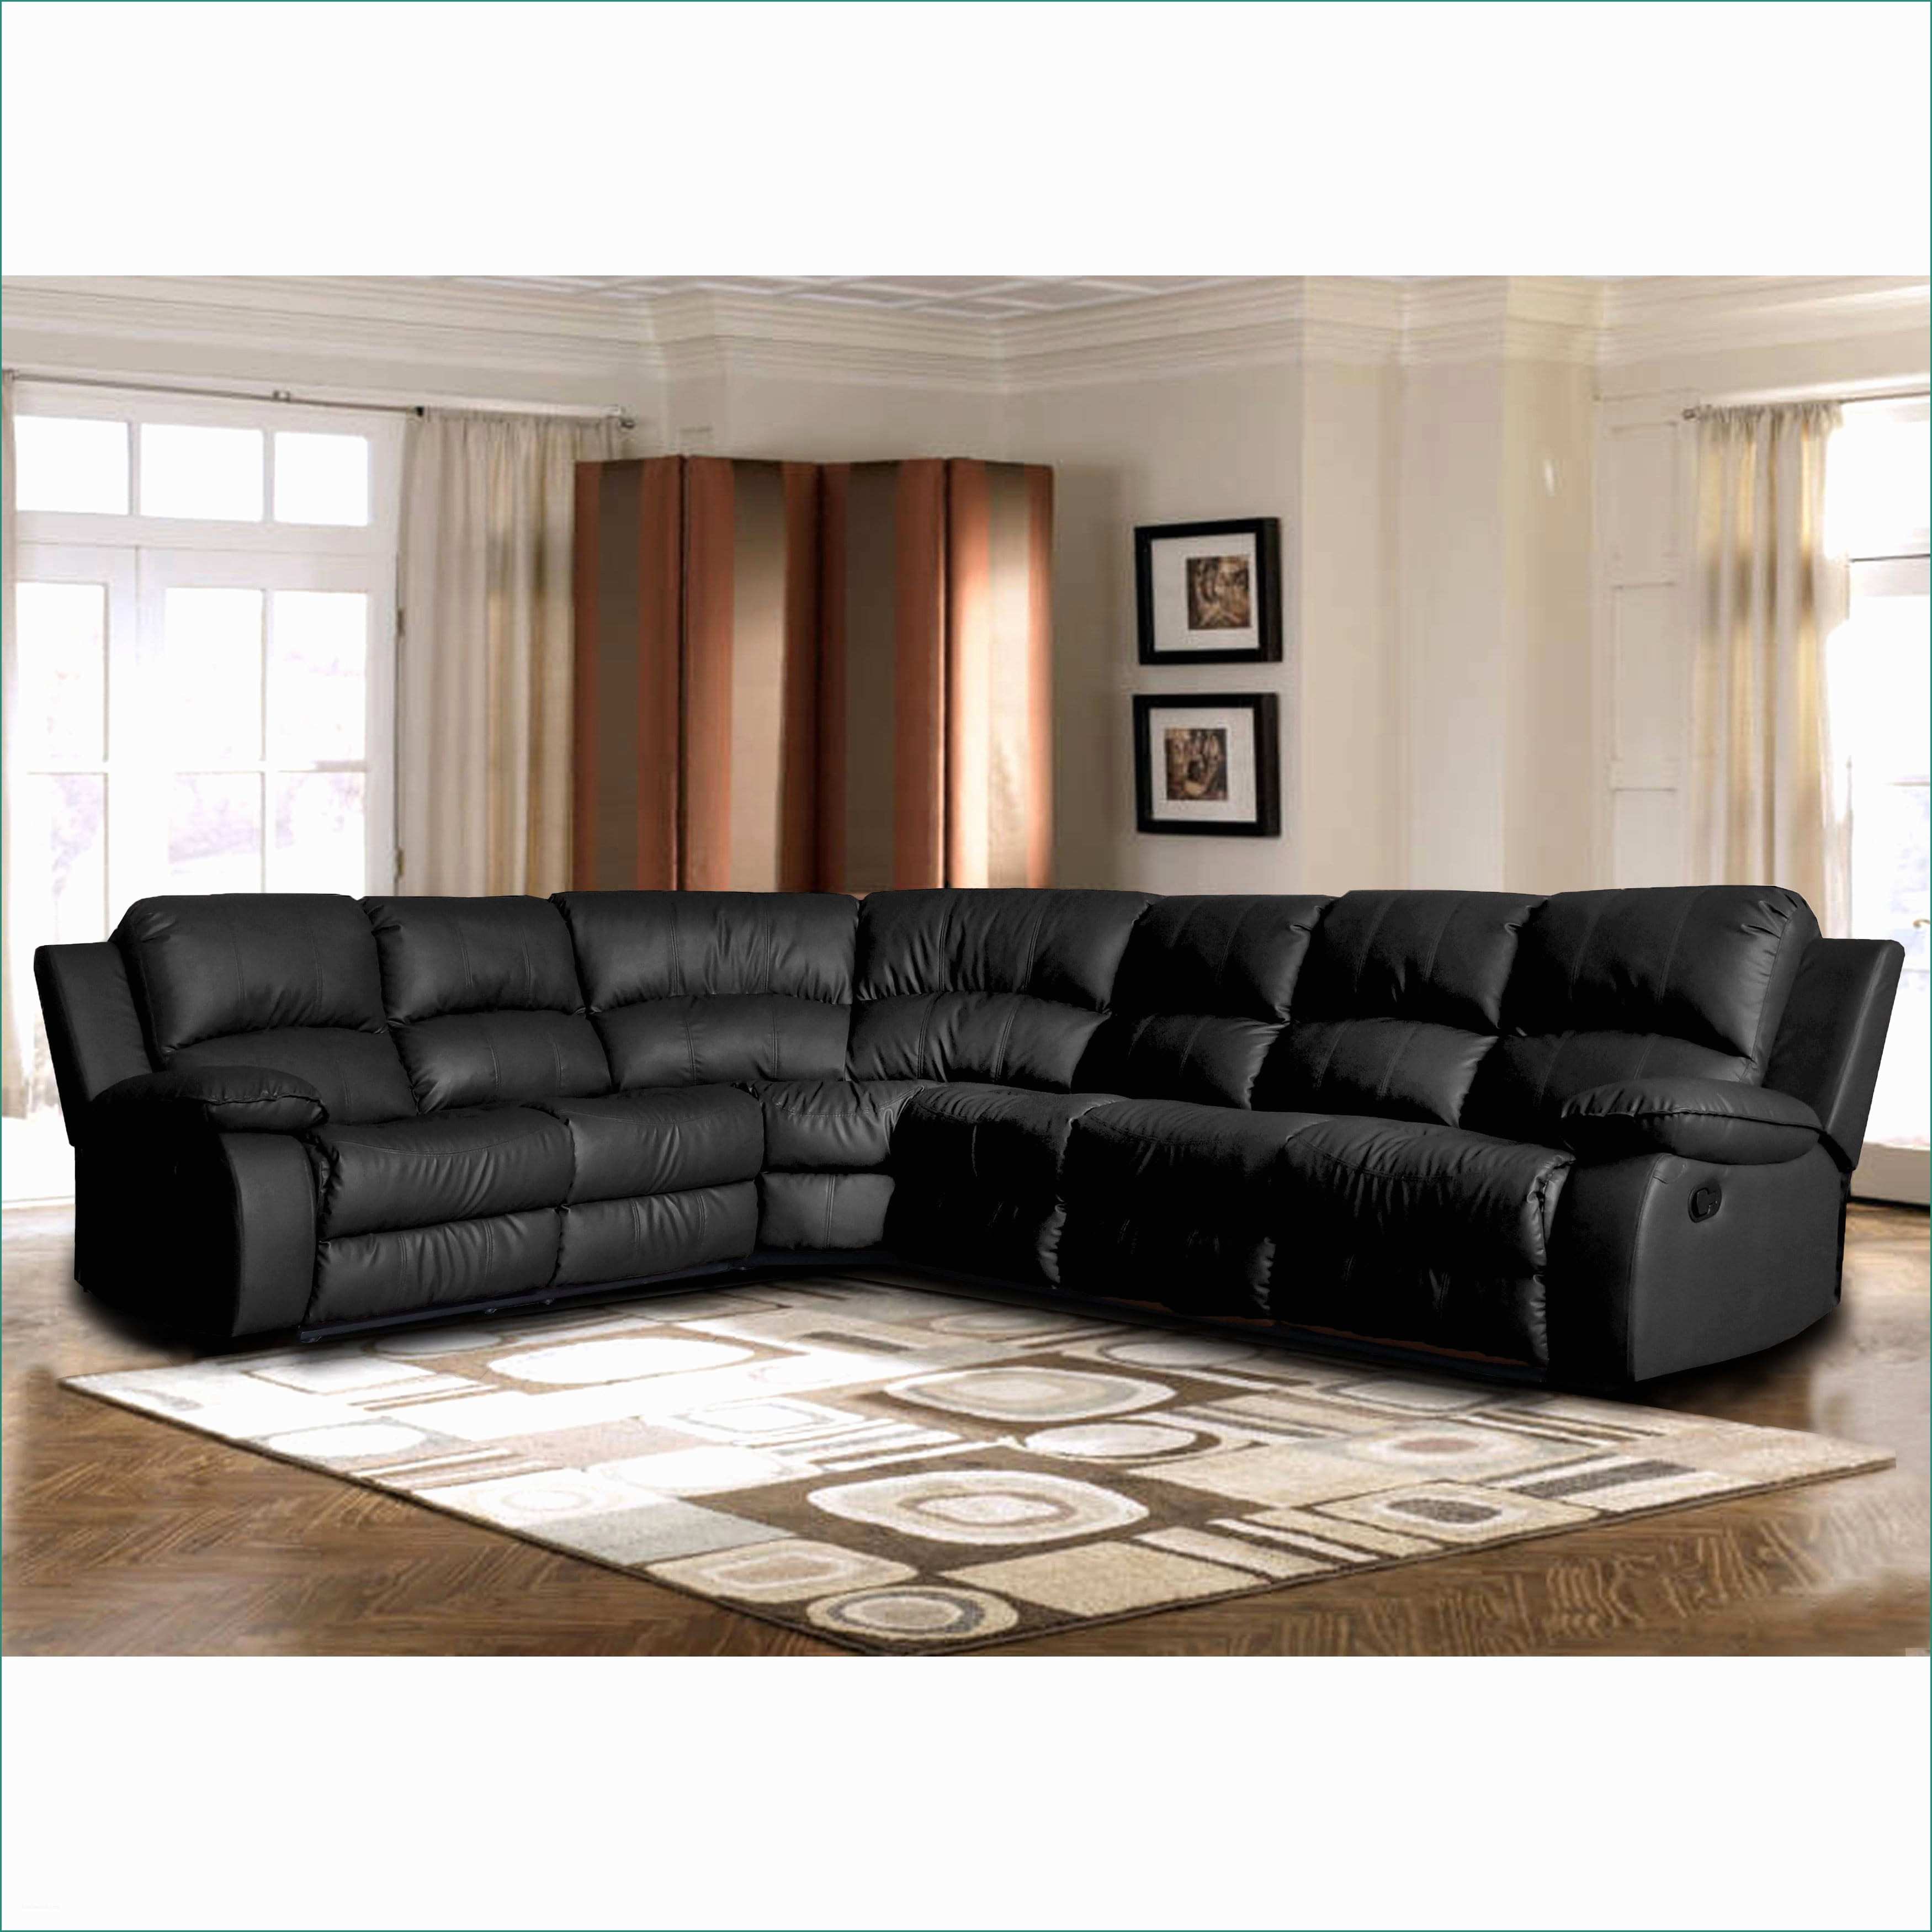 Divani Bampb E Leather Versus Fabric sofa Awesome 50 Unique Leather and Fabric sofa